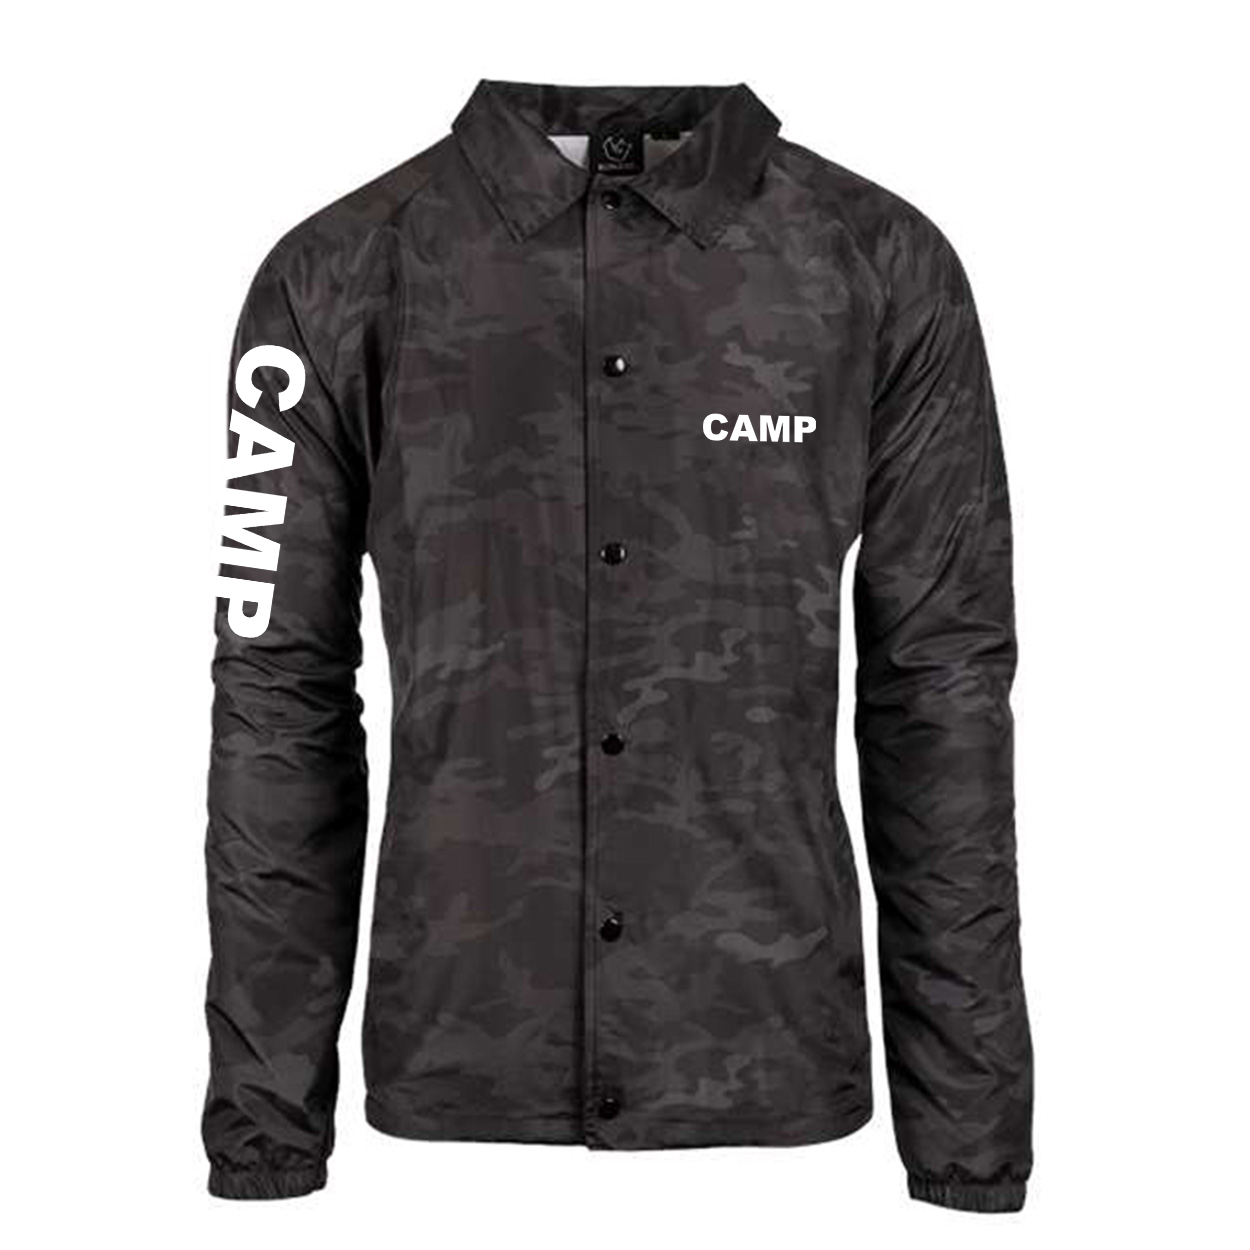 Camp Brand Logo Classic Mentor Jacket Black Camo